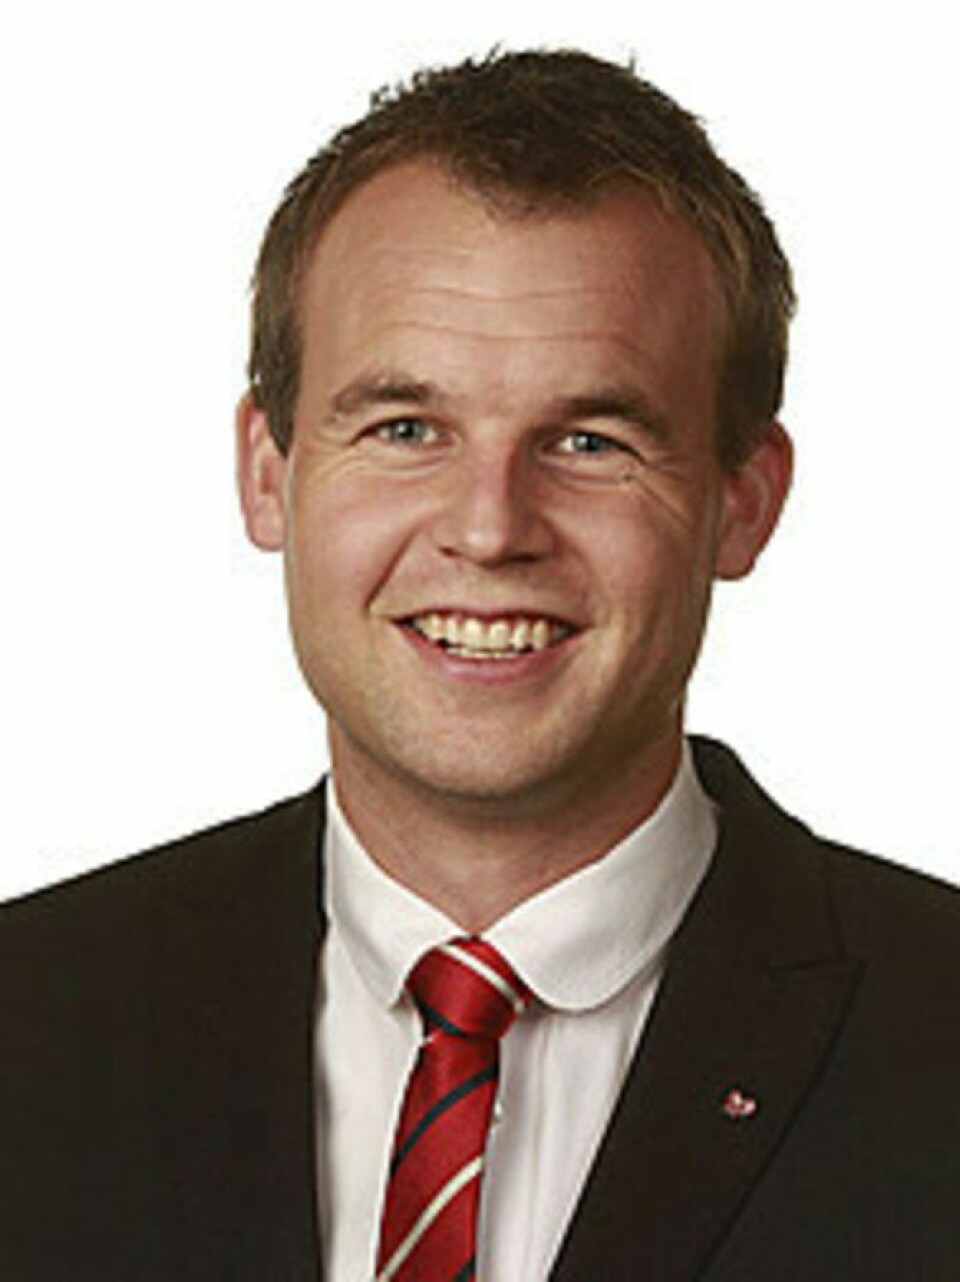 Kjell Ingolf Ropstad.jpg